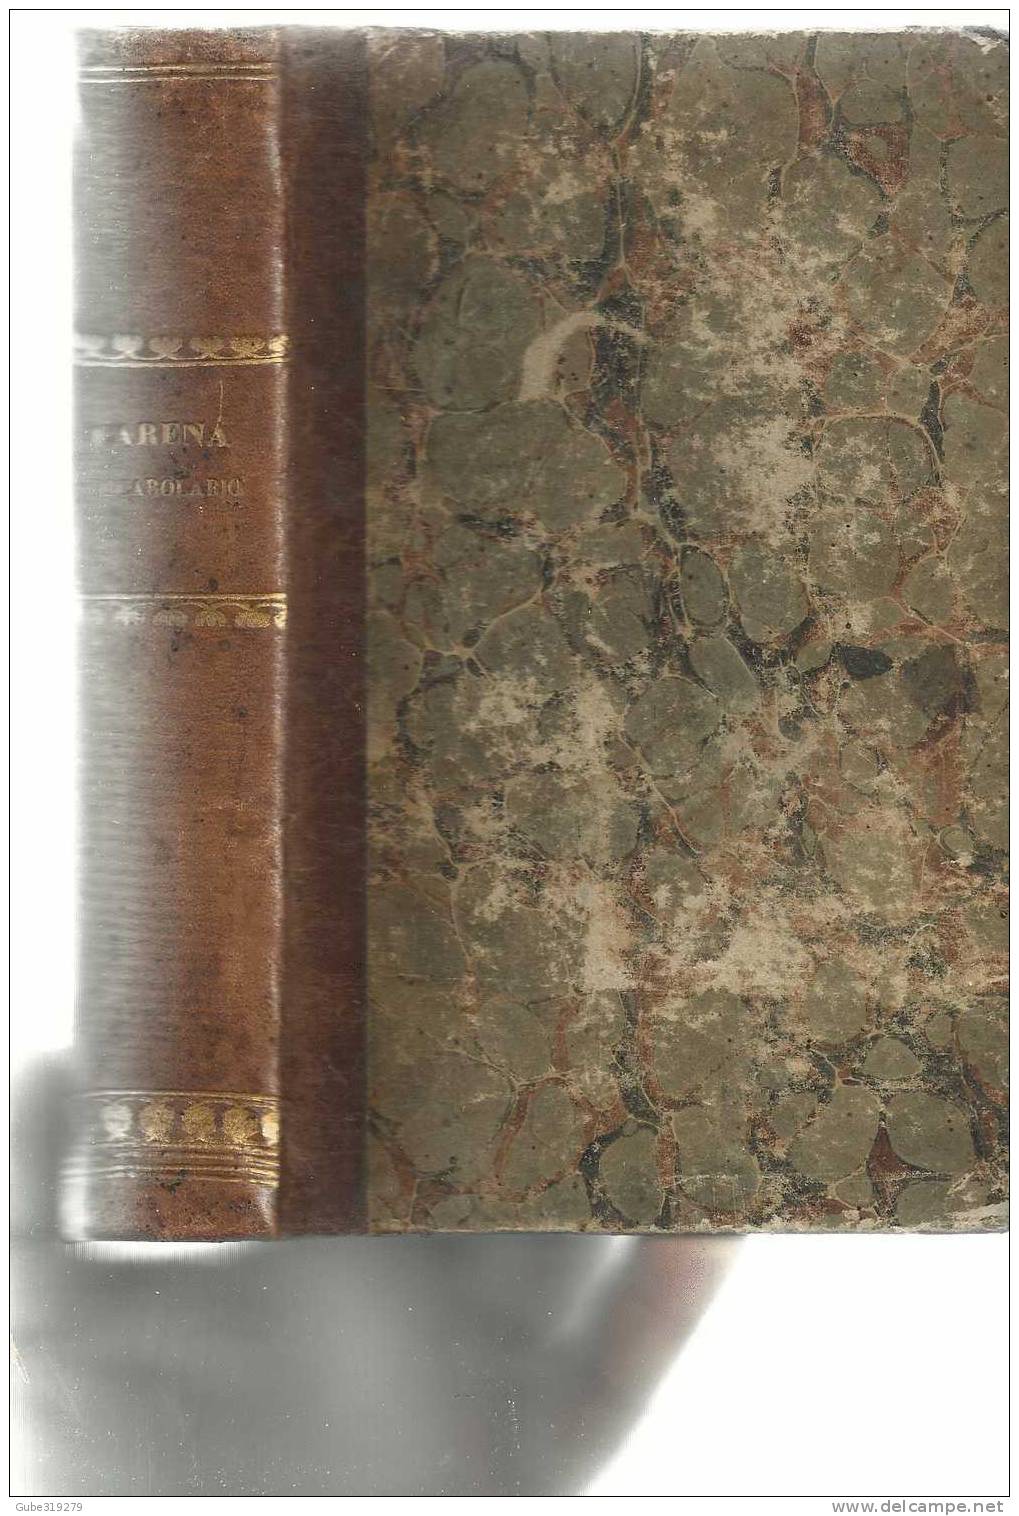 ANNO 1859 - REF.10- VOCABOLARIO DOMESTICO DEL PROF.  GIACINTO CARENA -4ª EDIZIONE G.MARGHIERI - C BOUTTEAUX -NAPOLI - Livres Anciens